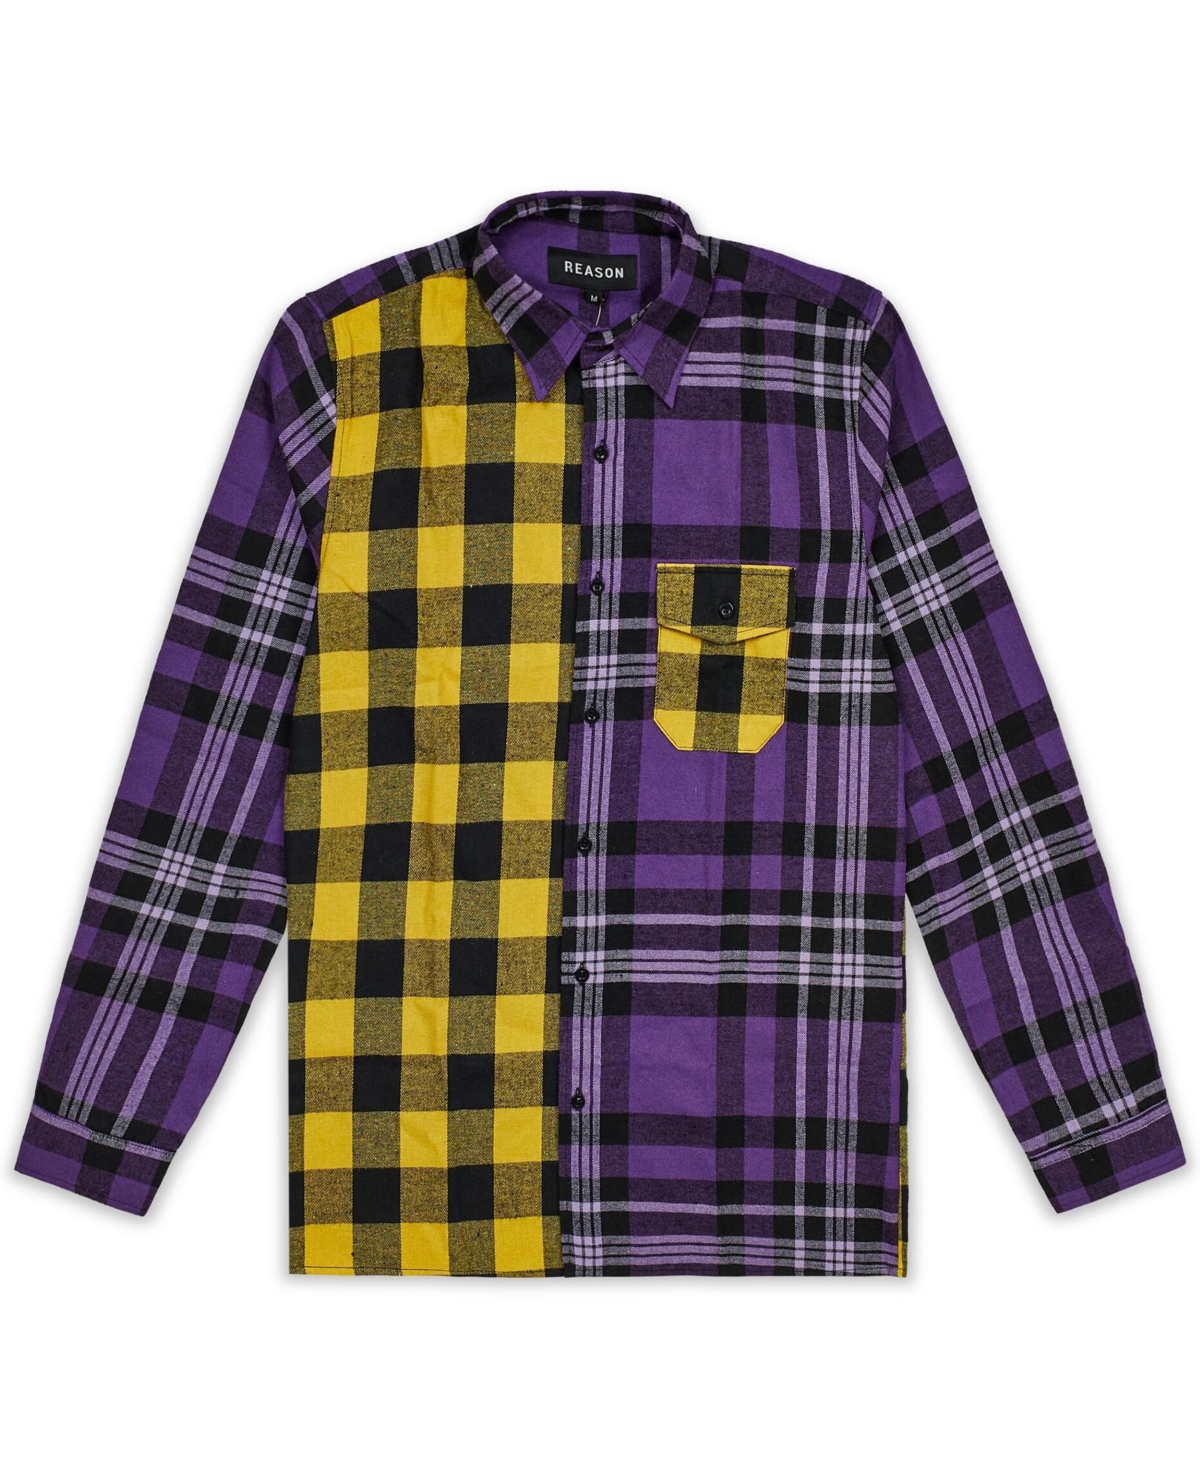 Reason Men's Hunter Flannel Shirt In Purple Multi